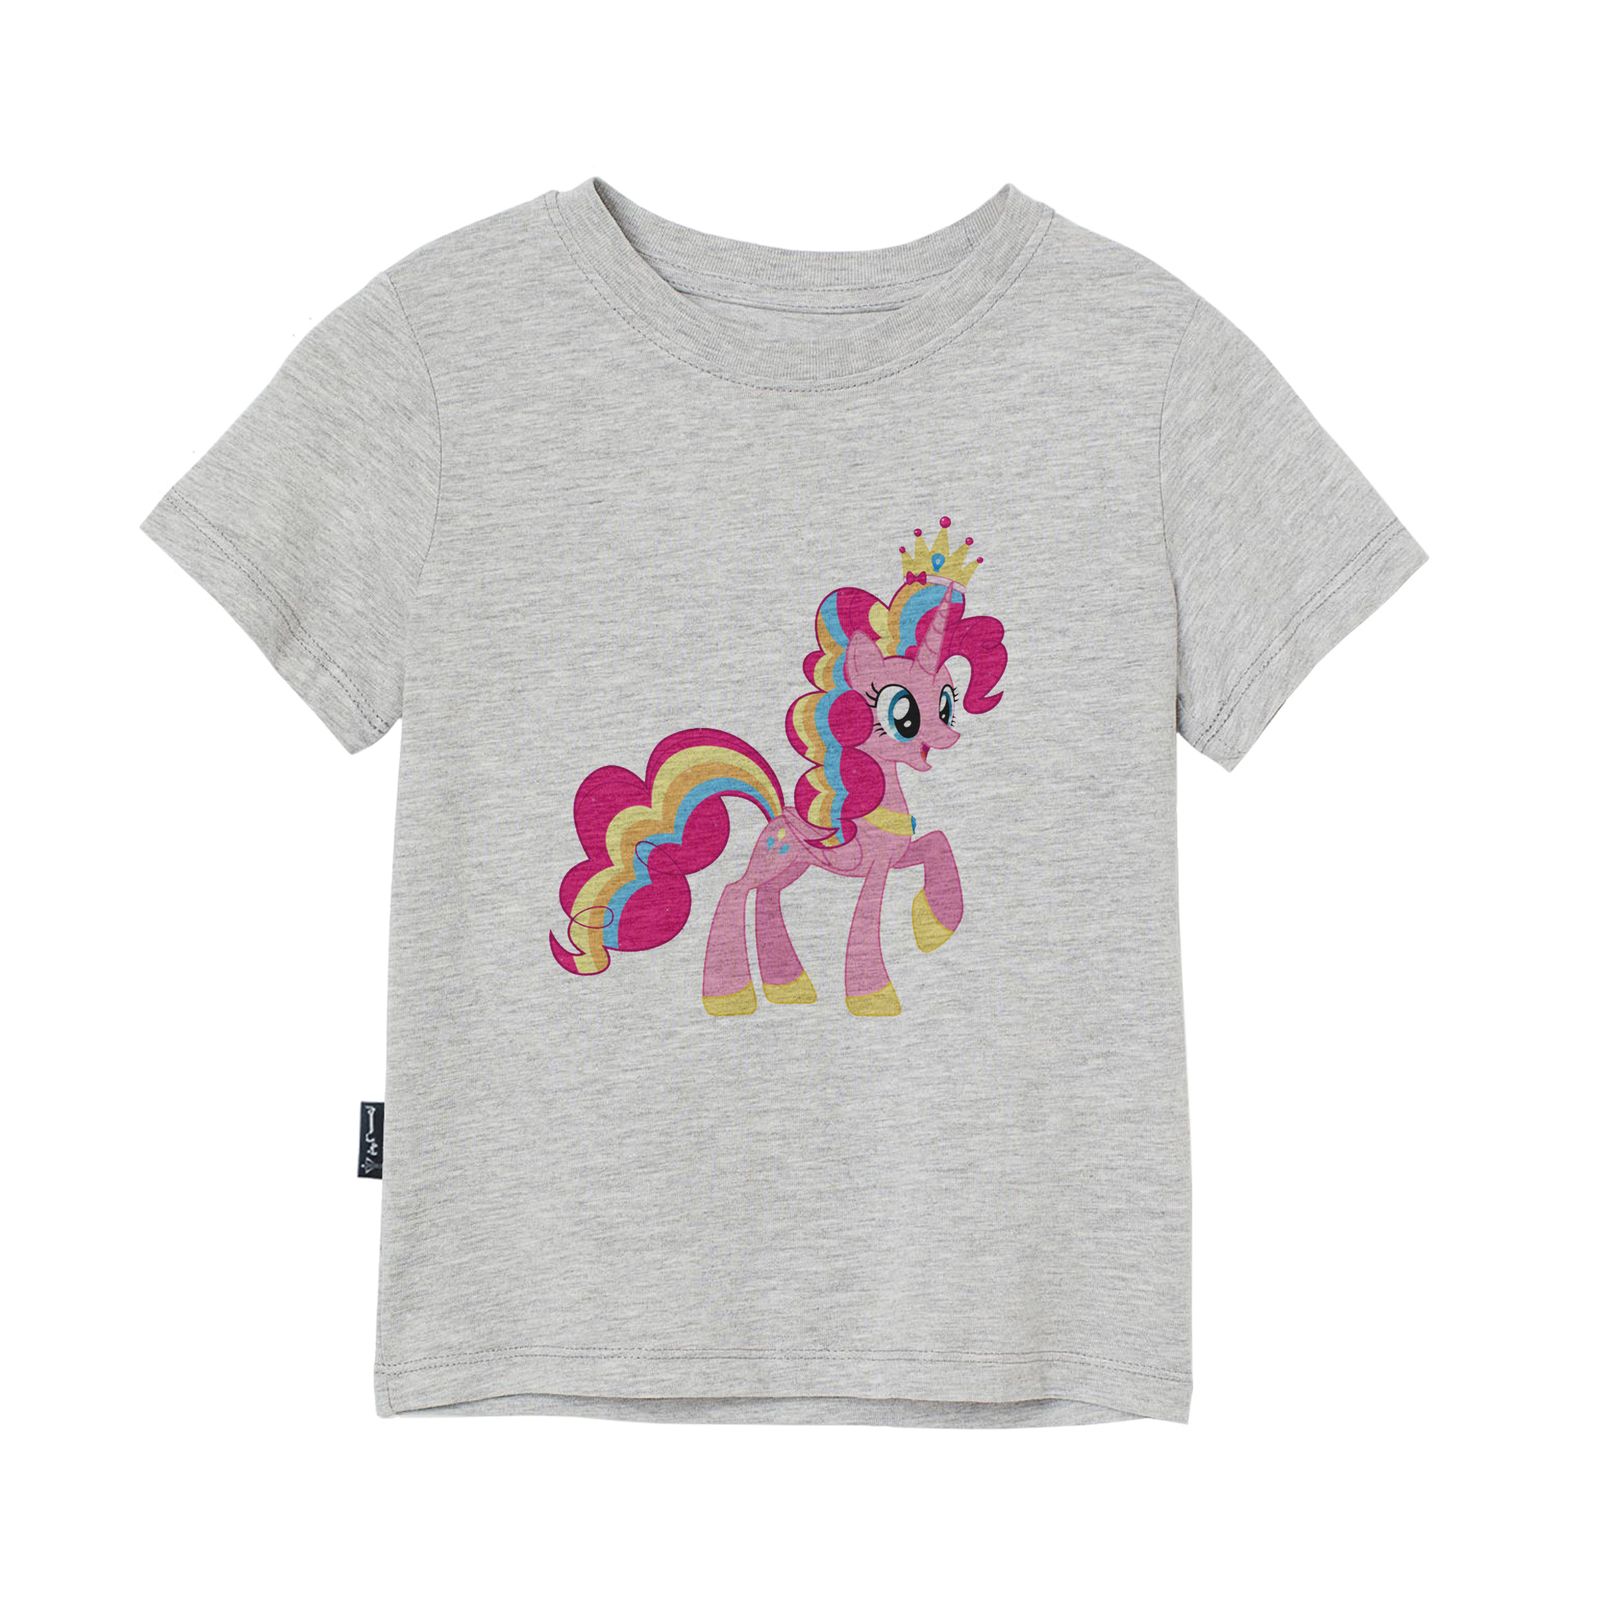 تی شرت آستین کوتاه پسرانه به رسم مدل اسب صورتی کد 1116 -  - 3